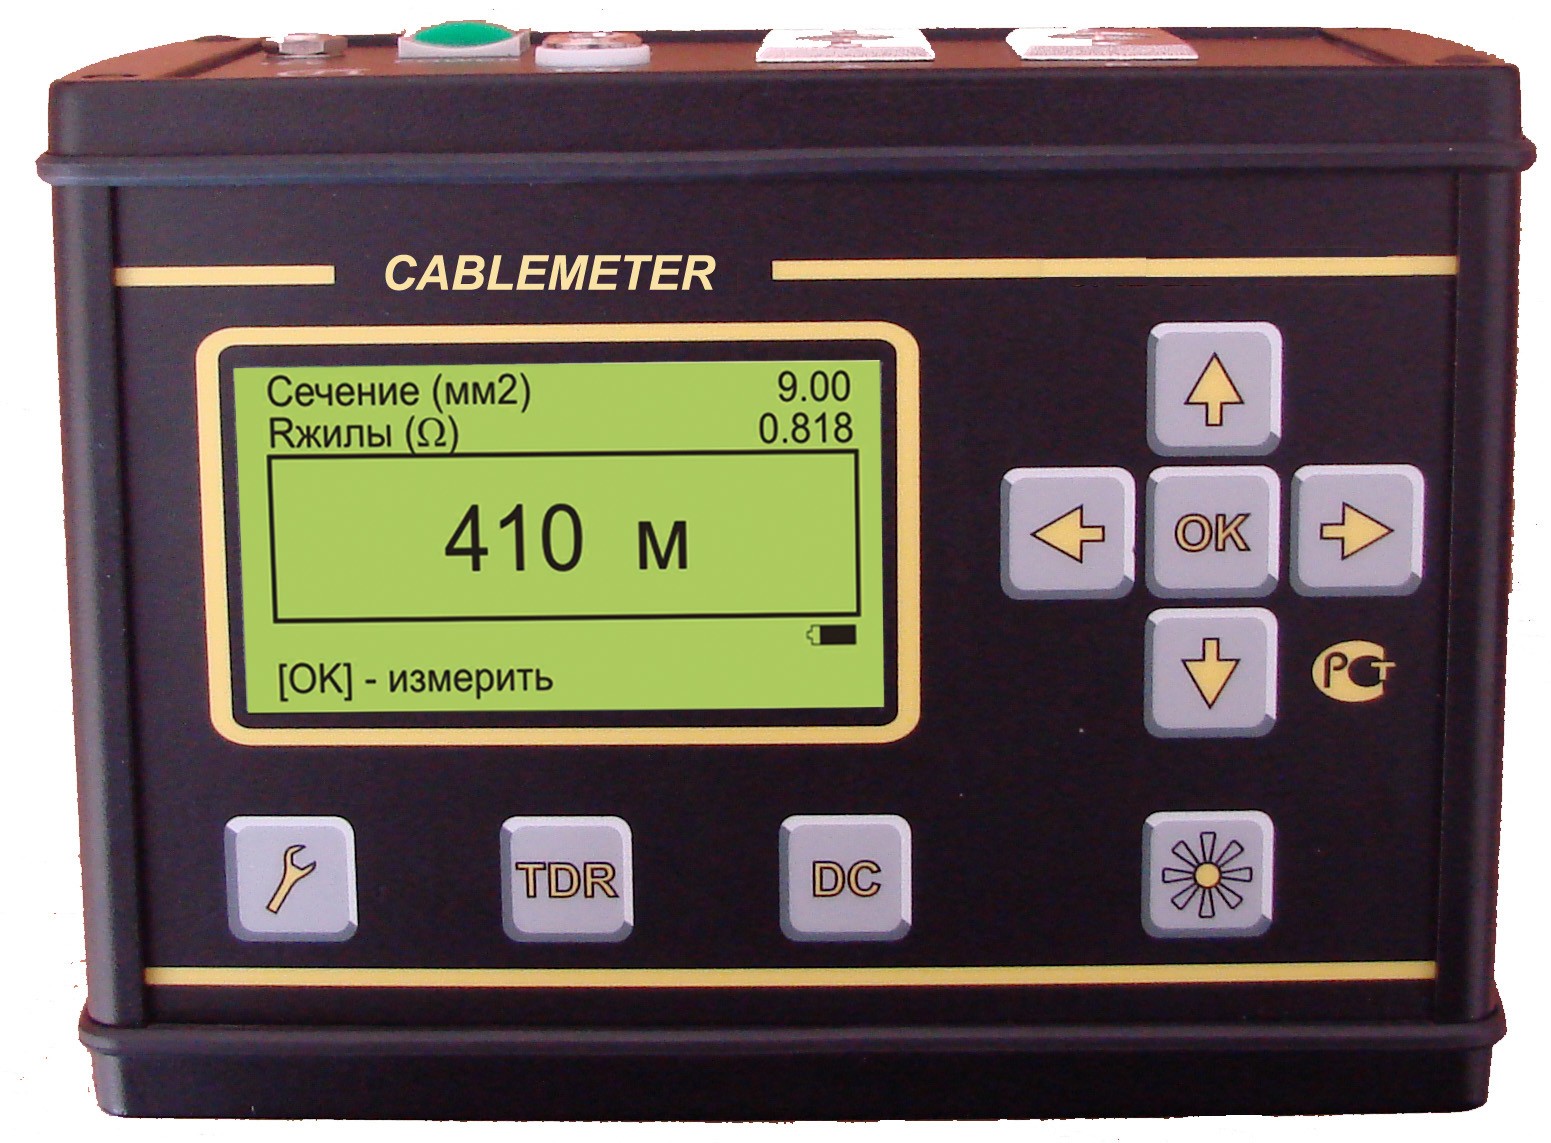 Связьприбор CableMeter - прибор для измерения длины кабеля